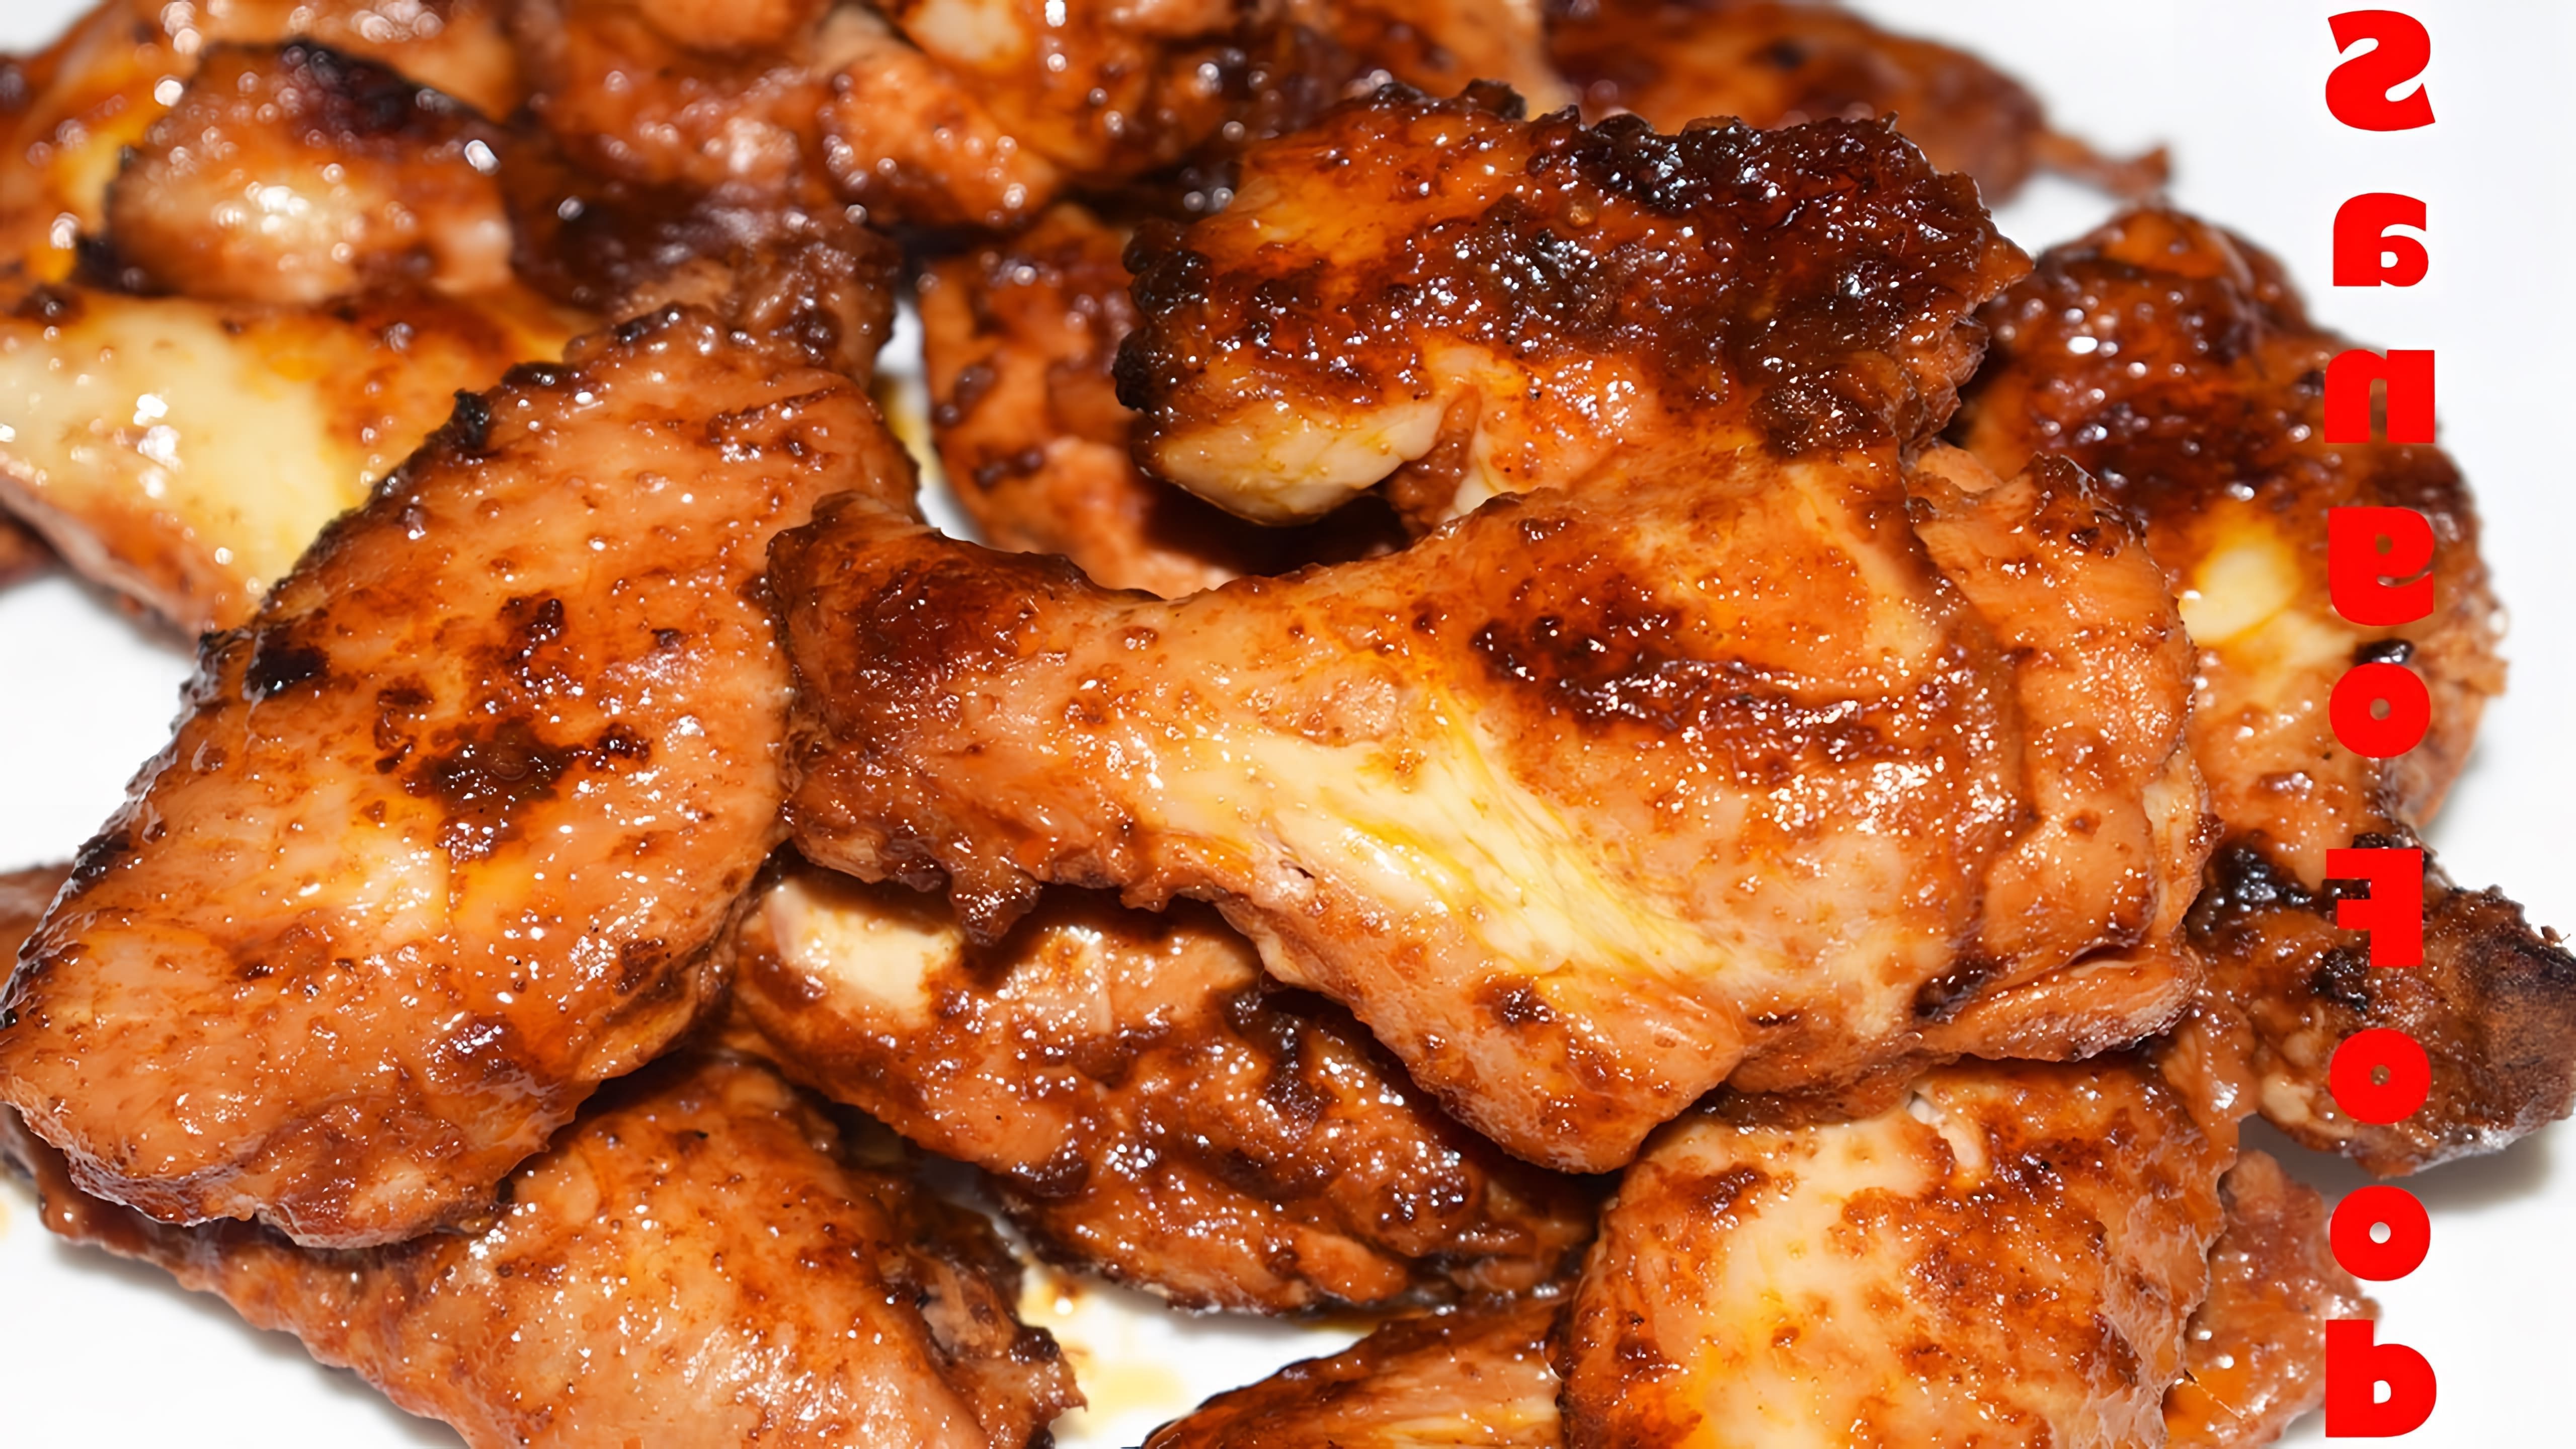 В этом видео демонстрируется рецепт приготовления мега вкусных куриных крылышек на сковороде в томатном соусе